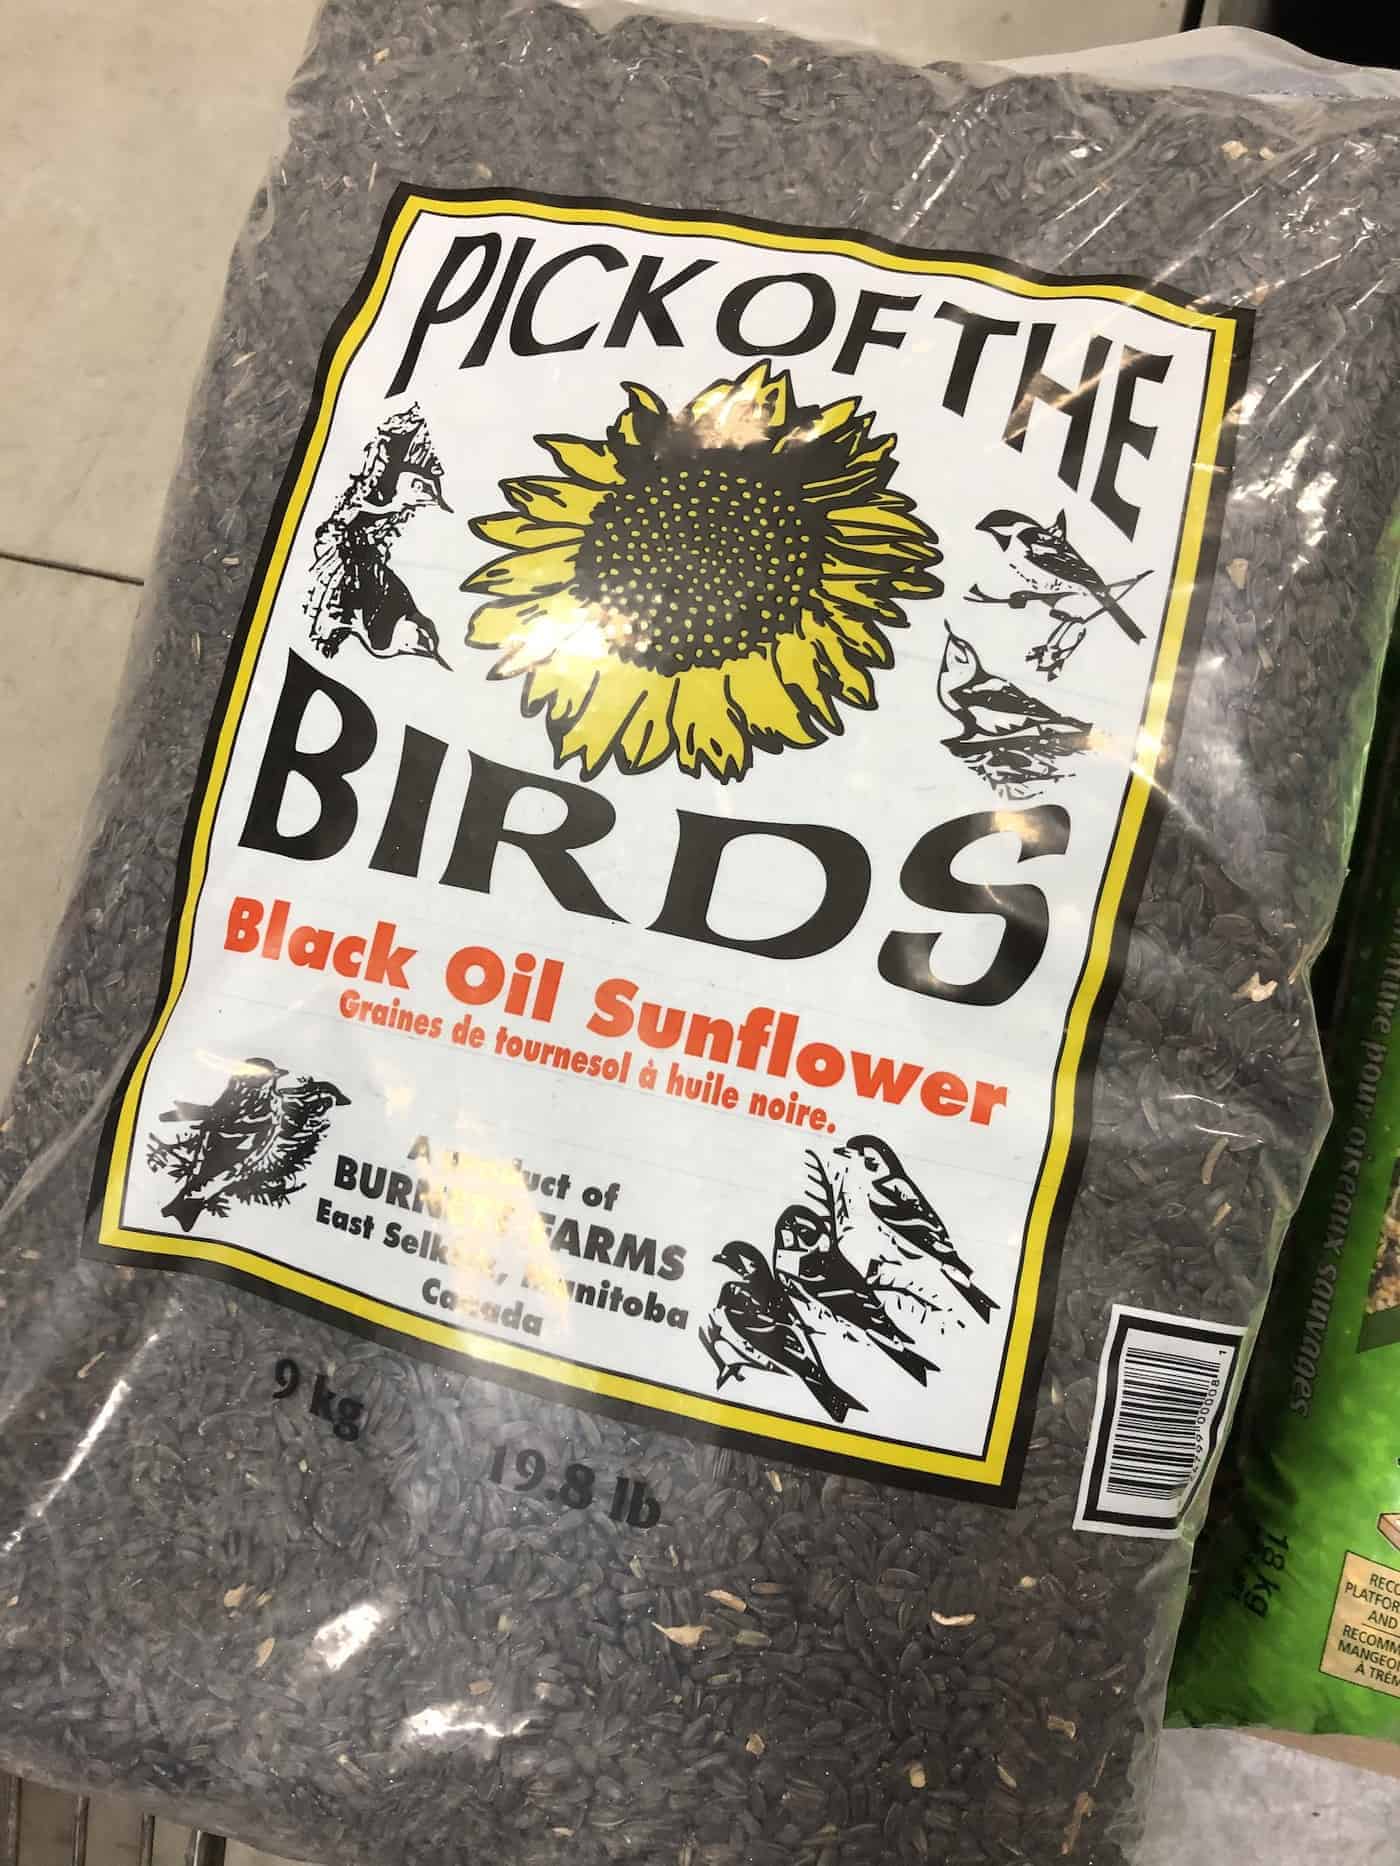 Black oil sunflower seeds - bird seed for feeding song birds